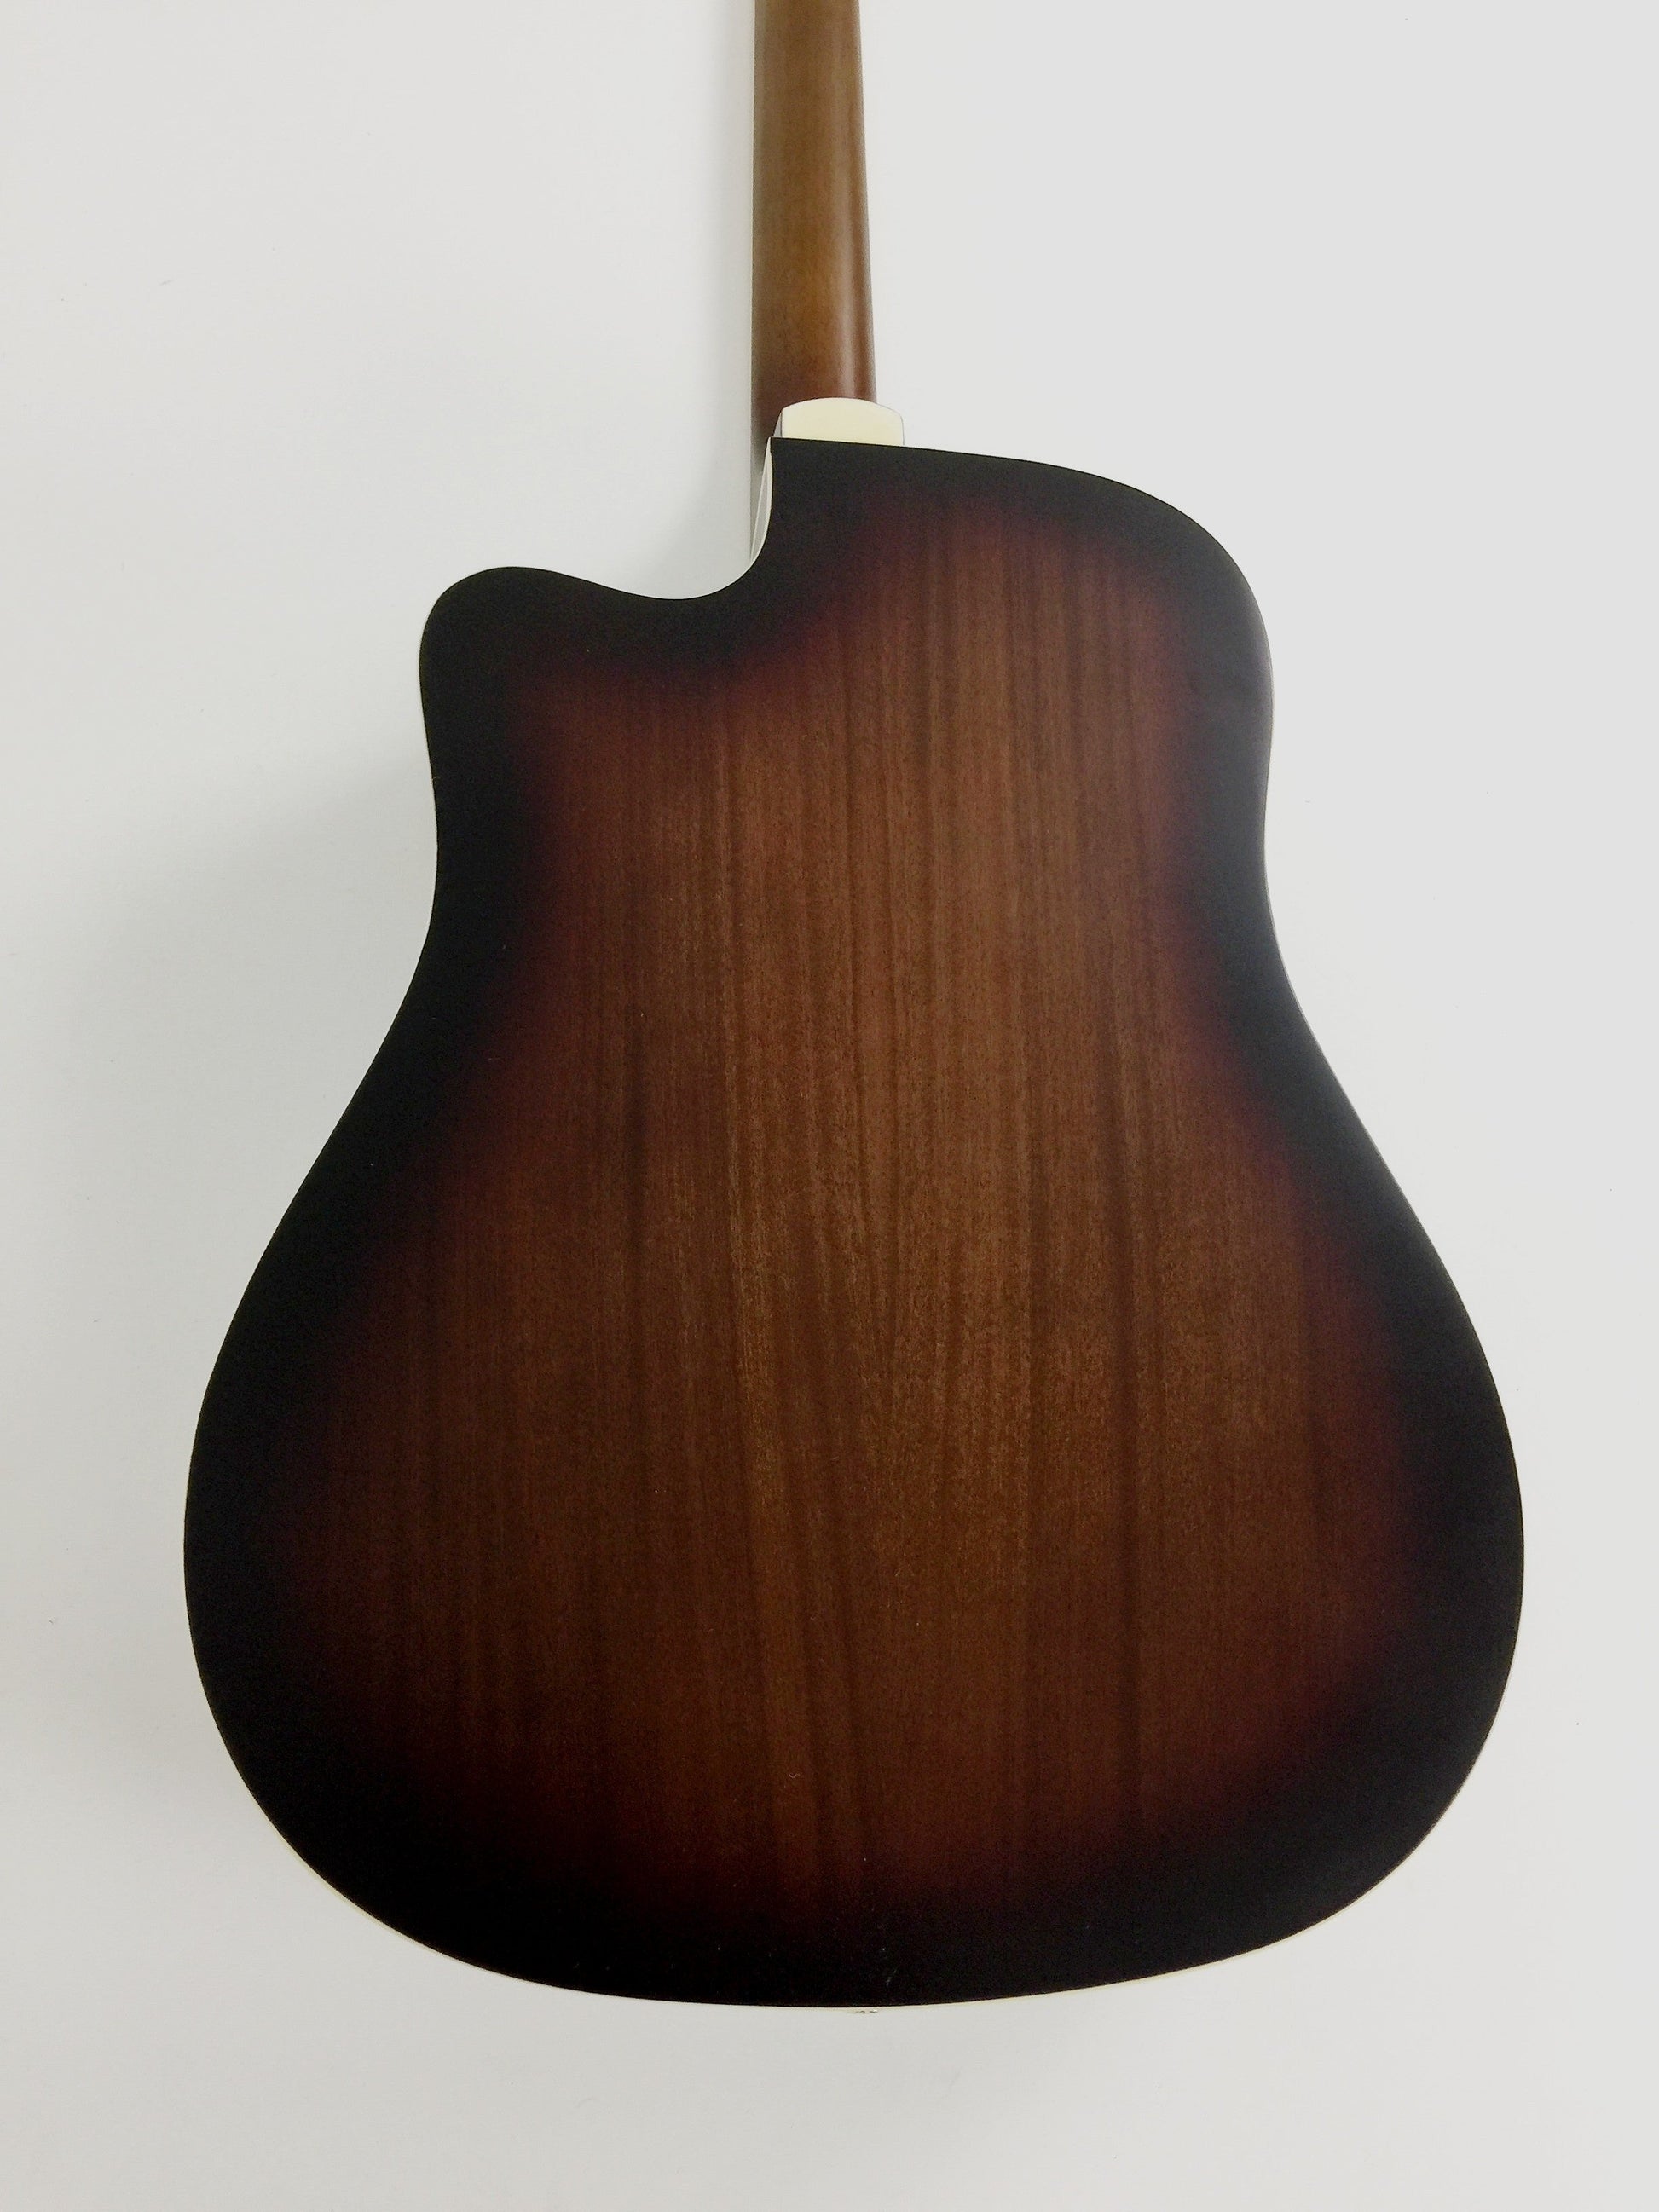 Haze Mahogany Top Built-In Pickup/Tuner Cutaway Acoustic Guitar - Tobaccoburst F650DVSCEQ